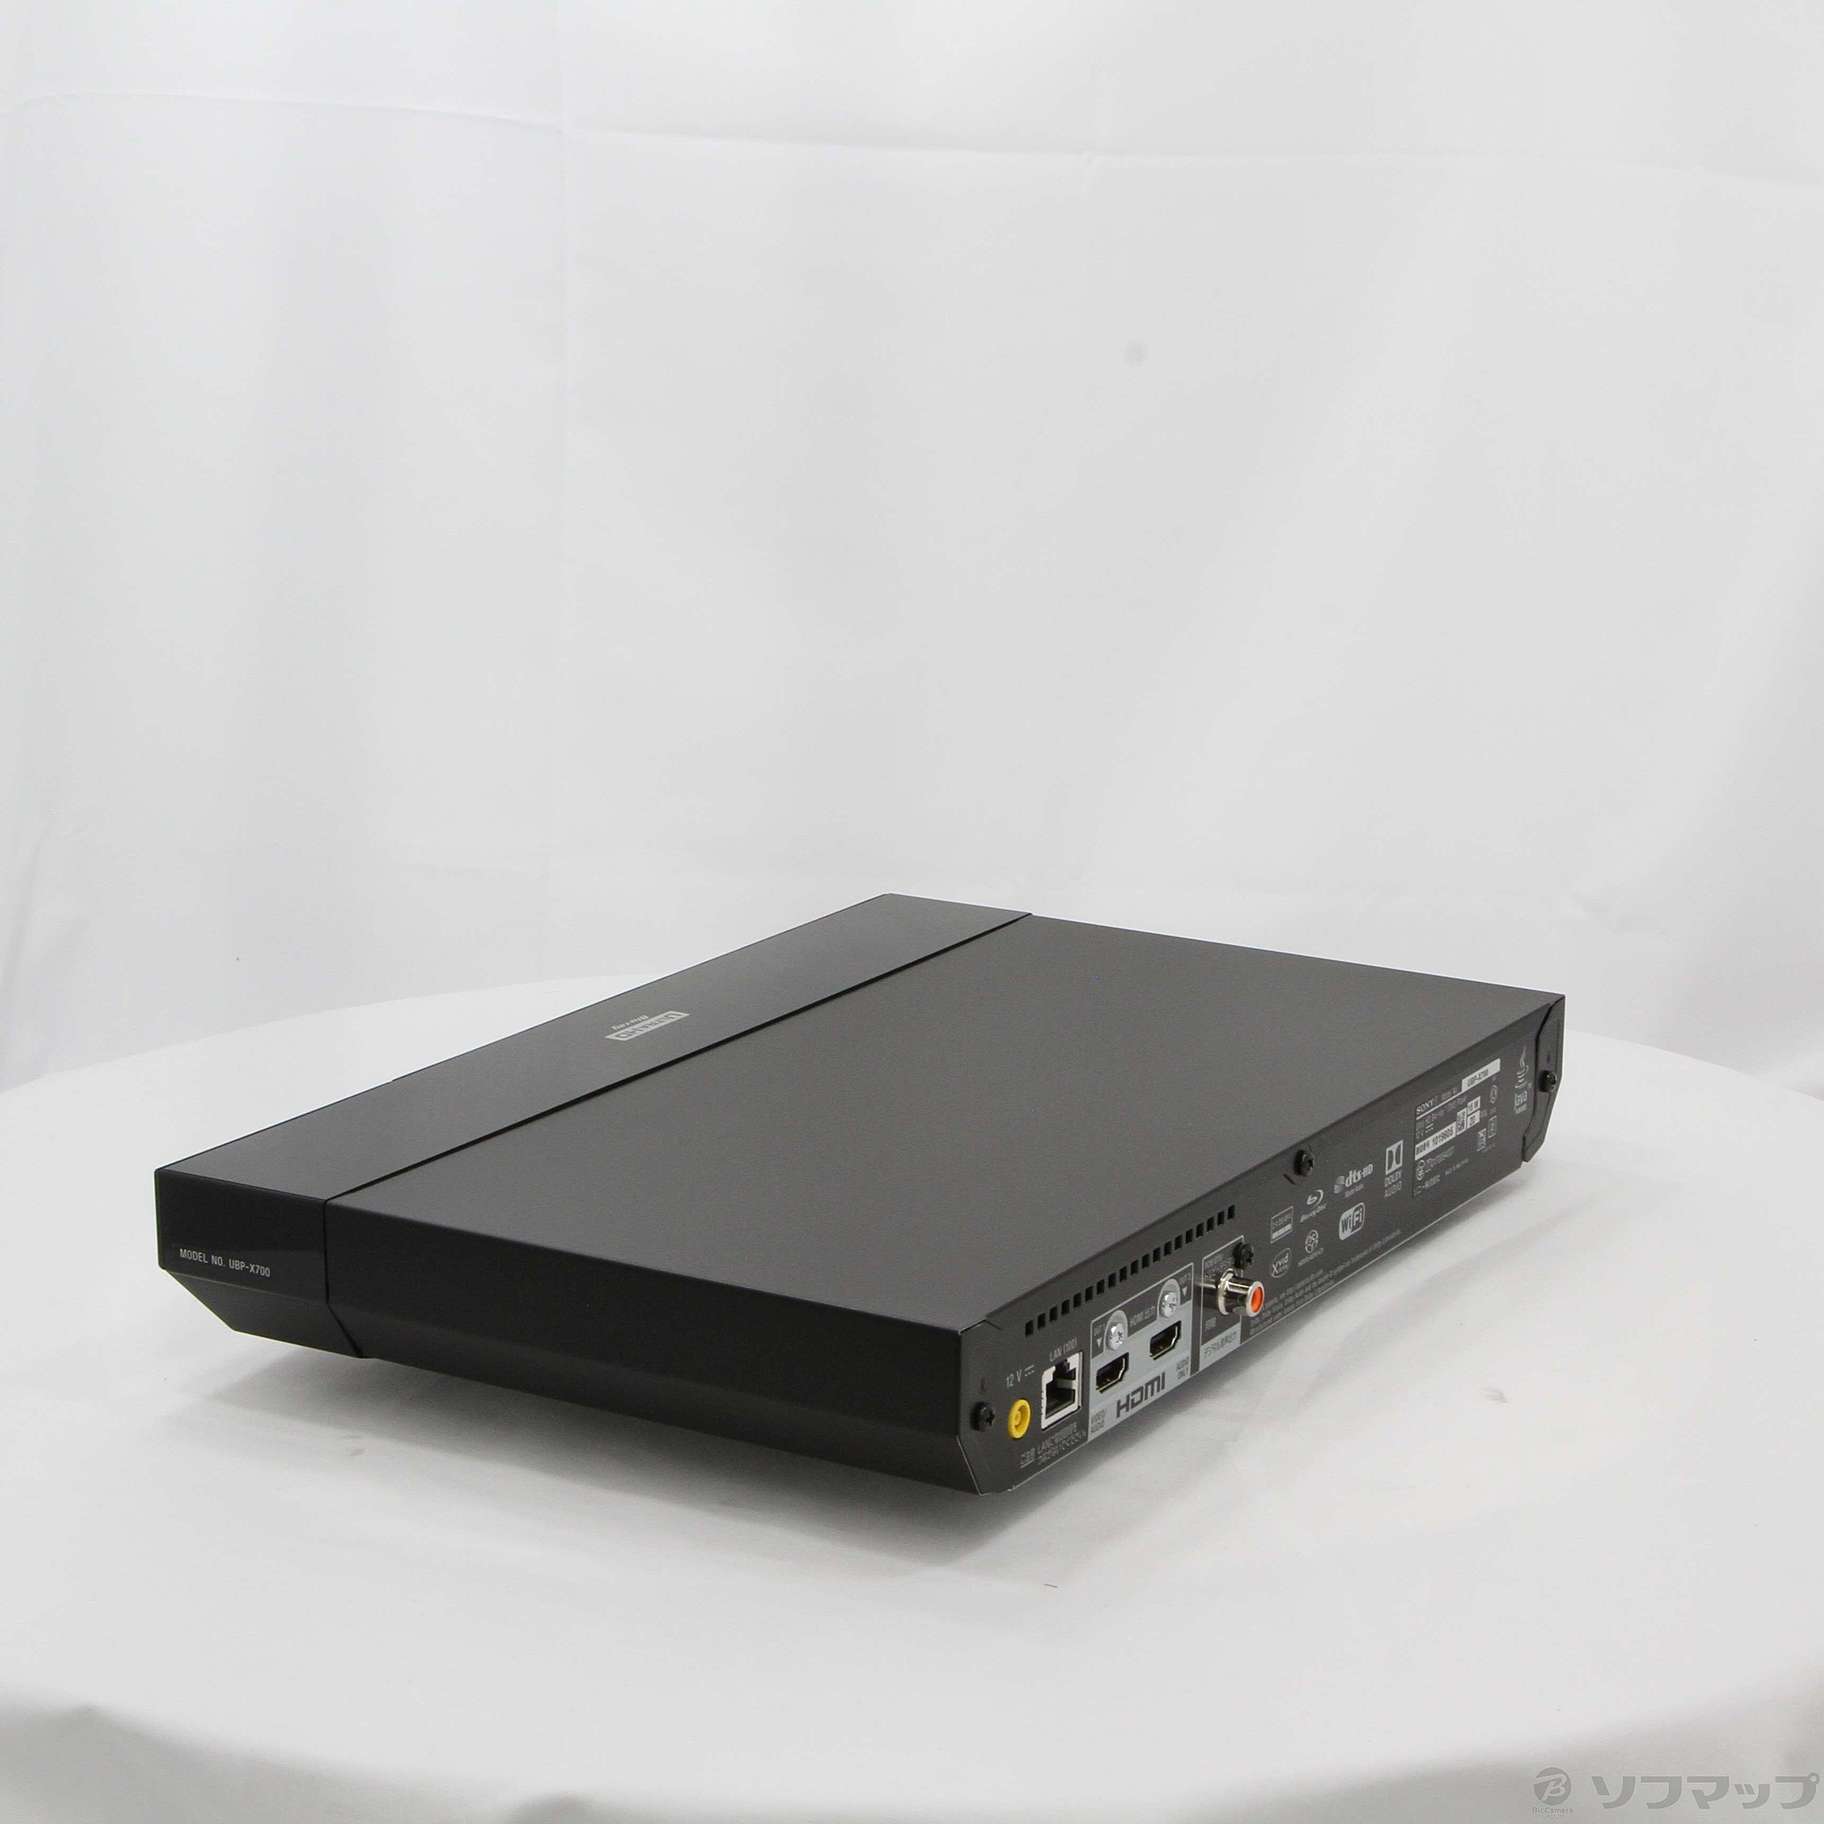 SONY UBP-X700 Ultra HD ブルーレイ再生対応